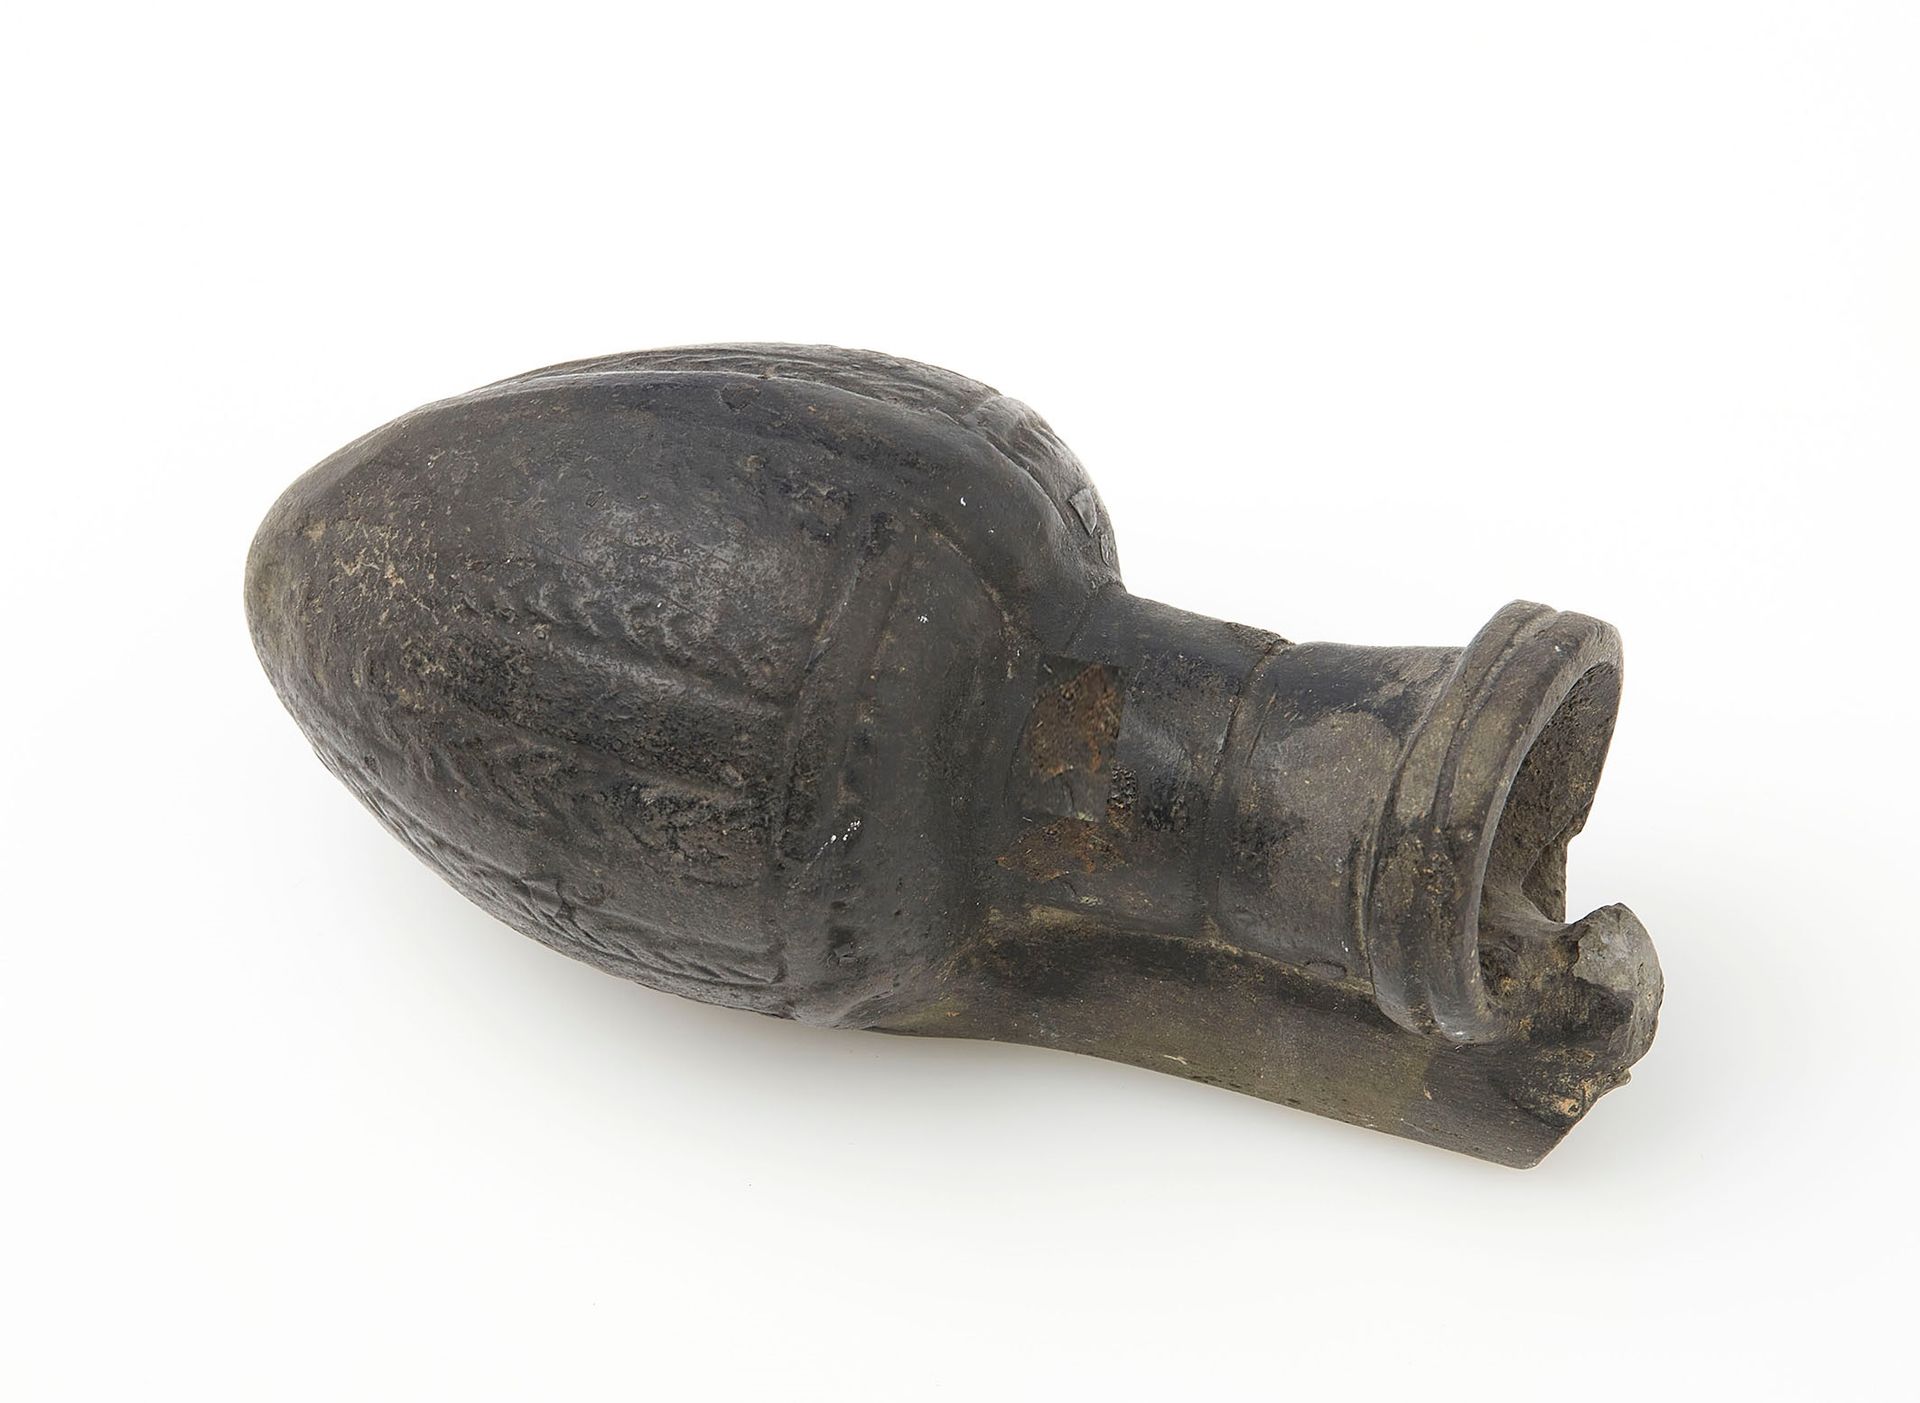 Null 陶土质地的花瓶（装药膏），有黑色的滑石。手柄由一个爬行动物代表。很可能是埃及，托勒密时期。高度：10厘米。10厘米高。